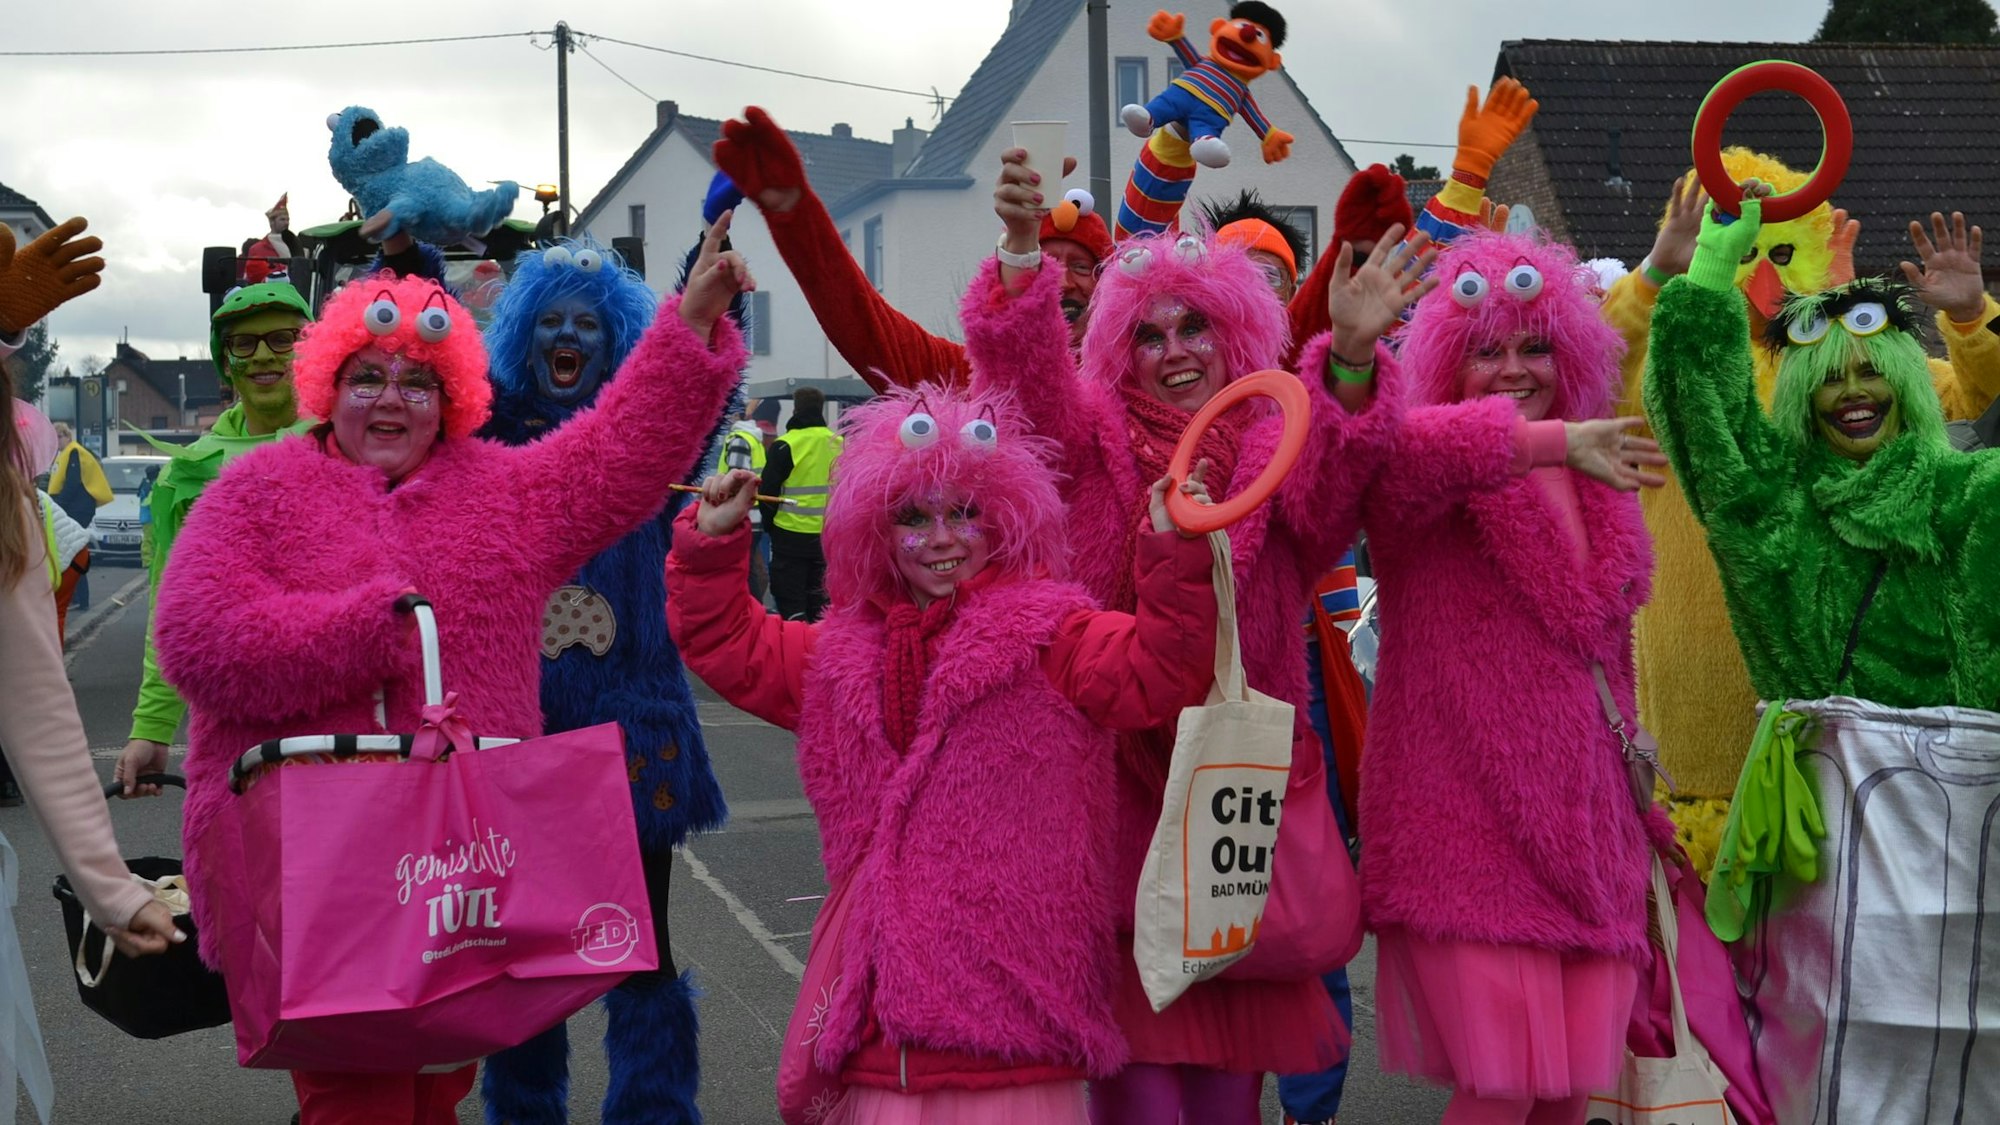 Plüsch-Kostüme in pink, blau, gelb und grün tragen die Karnevalisten, die die  Sesamstraße als Motto haben.